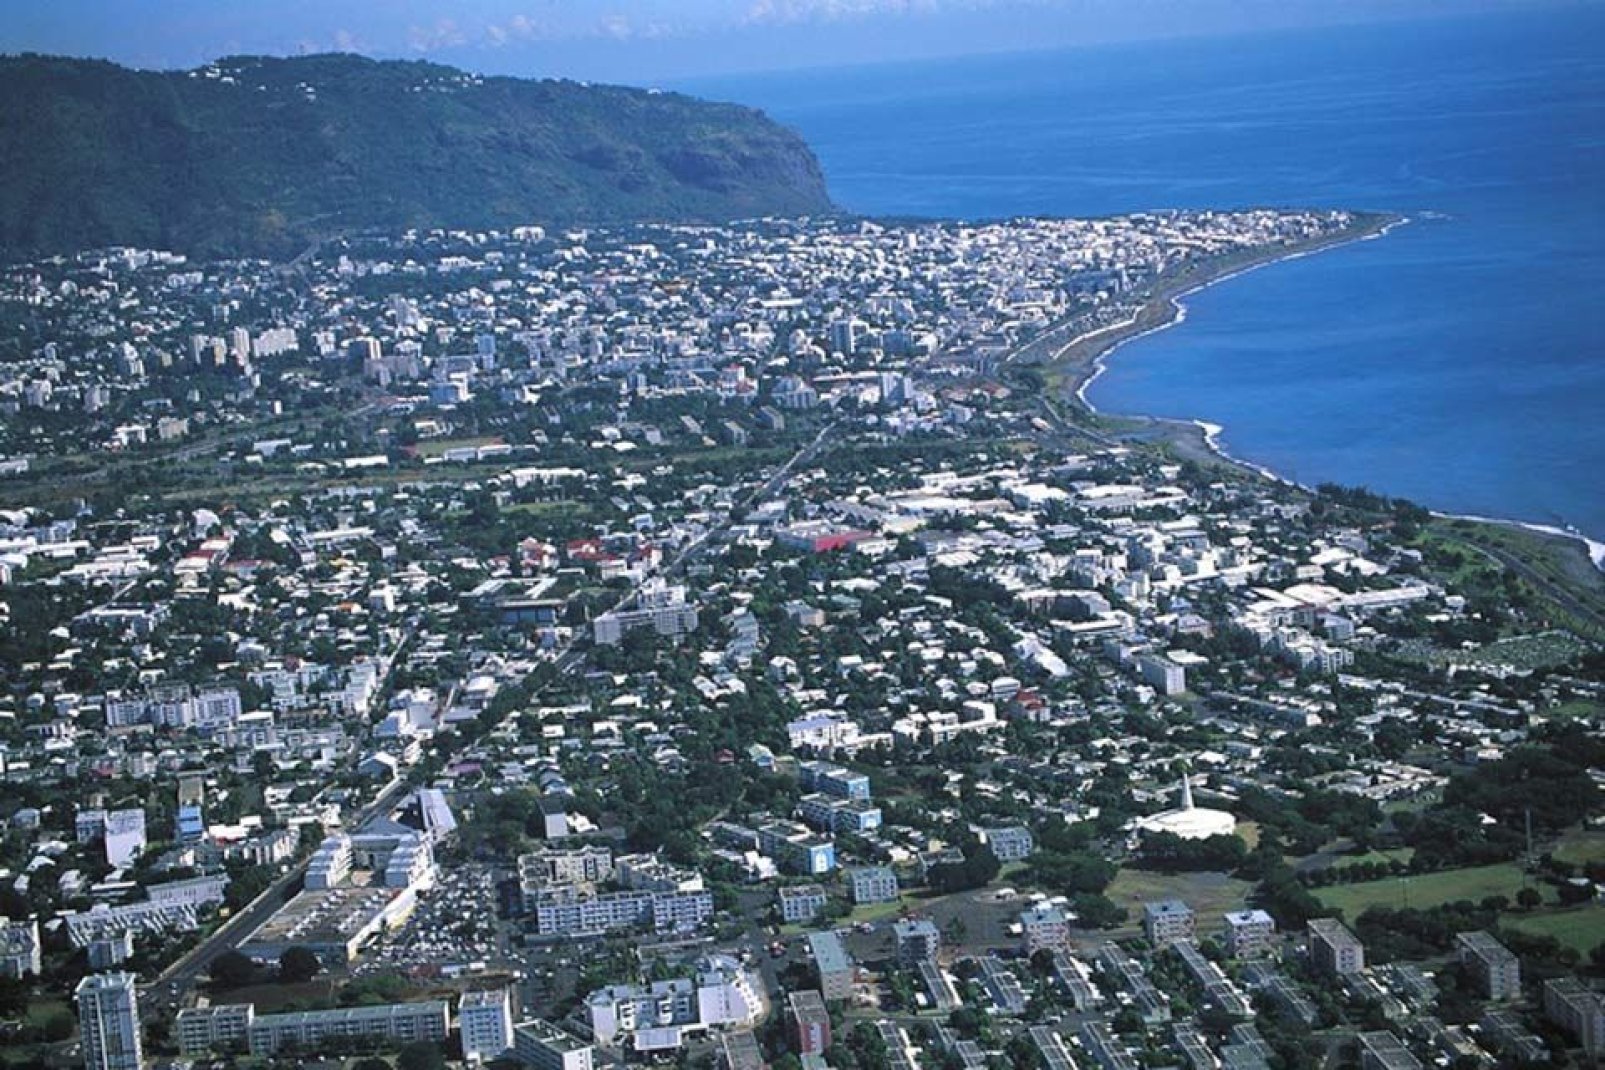 Capoluogo del dipartimento della Réunion, Saint-Denis, nonostante sia la capitale, attira soltanto pochi turisti.